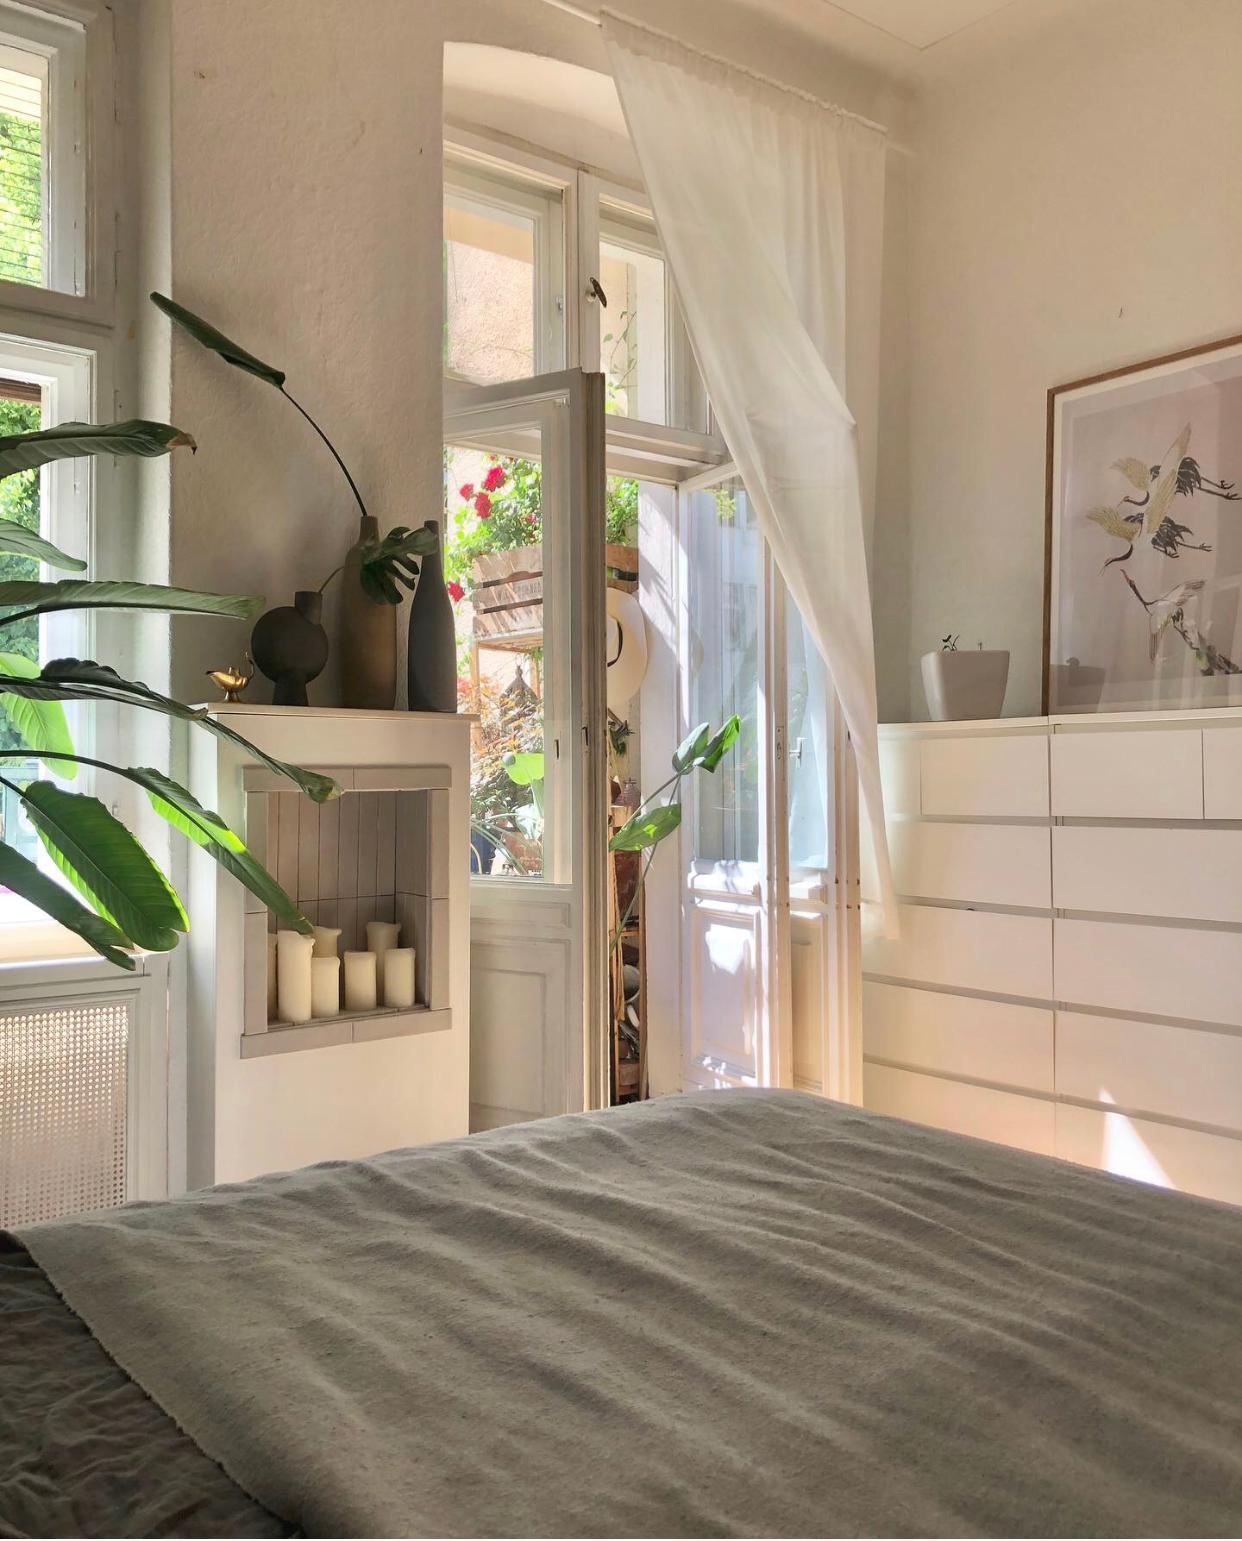 🌺 #schlafzimmer #balkon #pflanzen #vasenliebe #kamin #kerzen